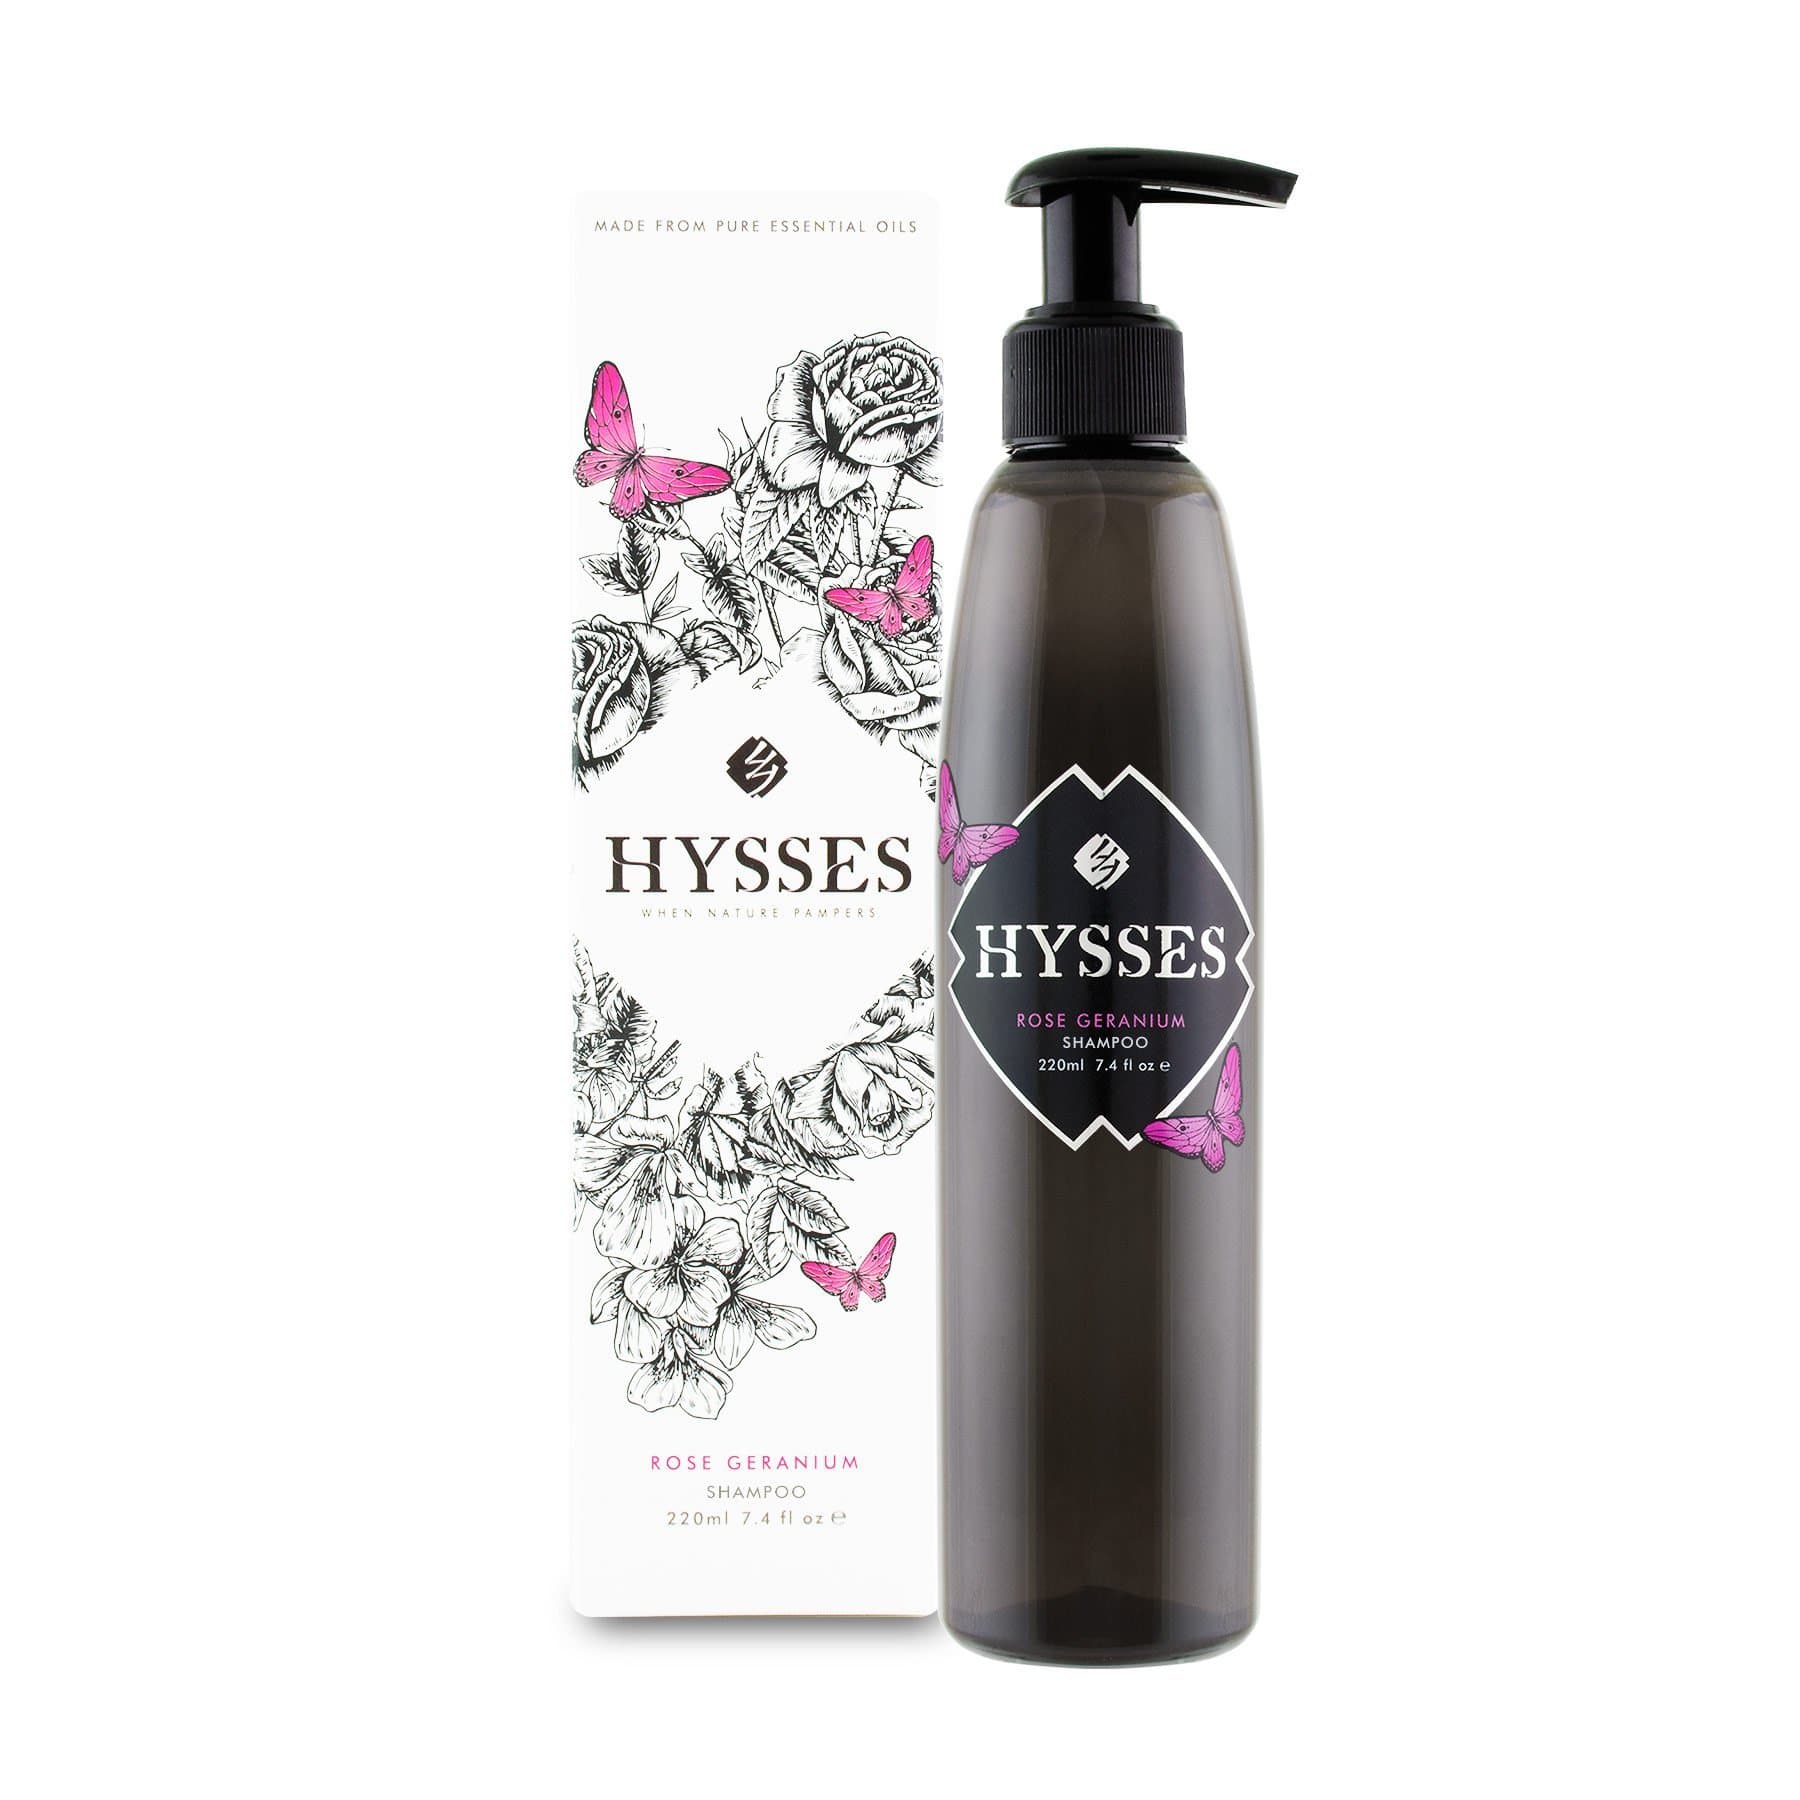 Hysses Hair Care 220ml Shampoo Rose Geranium